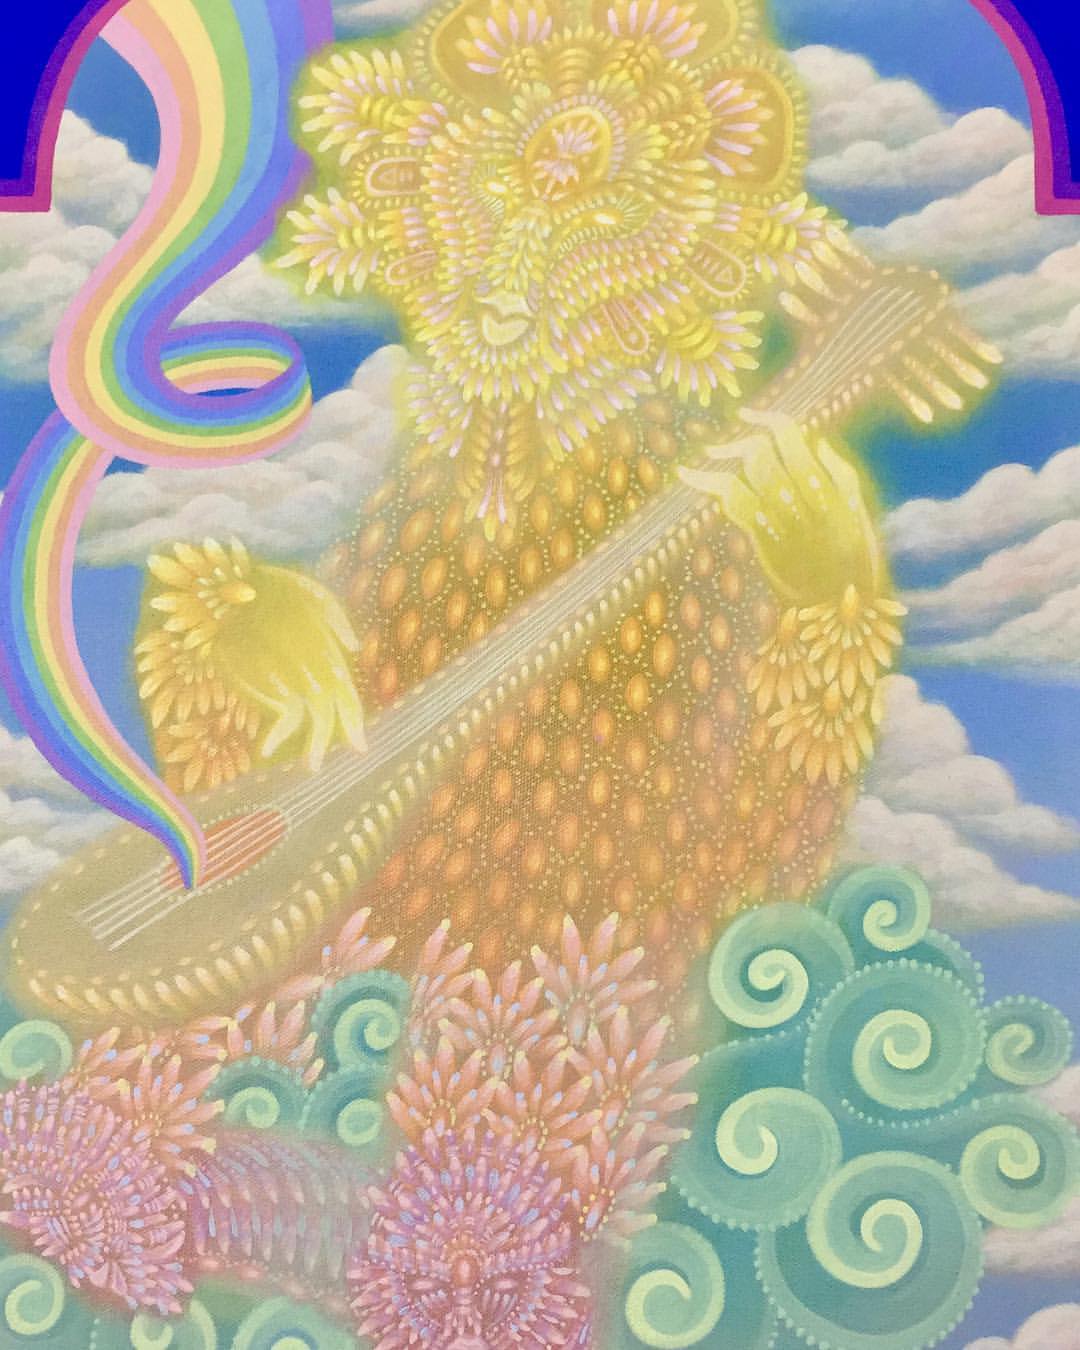 Personnage doré au milieu des nuages qui joue d'un instrument dont s'échappe un arc en ciel